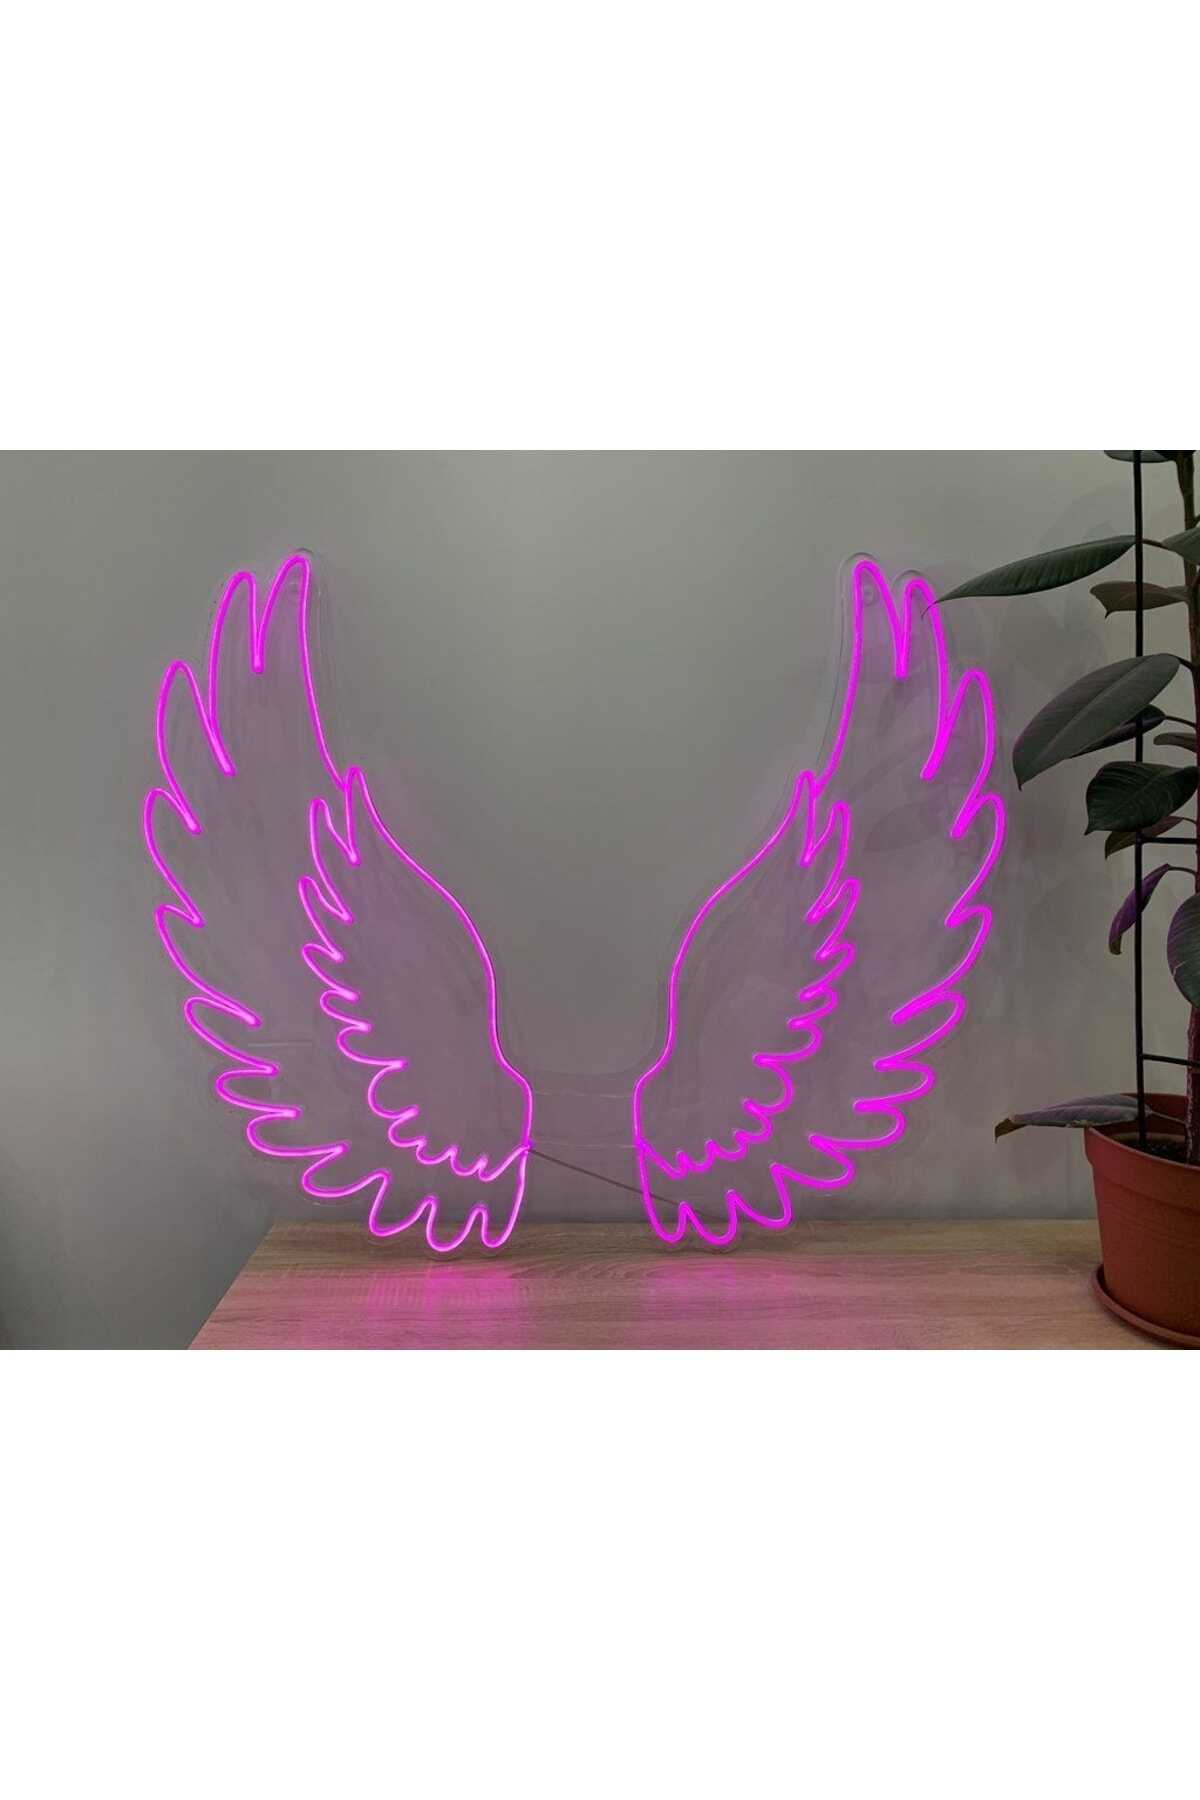 لامپ تزئینی  LED طرح بال فرشته چند رنگ